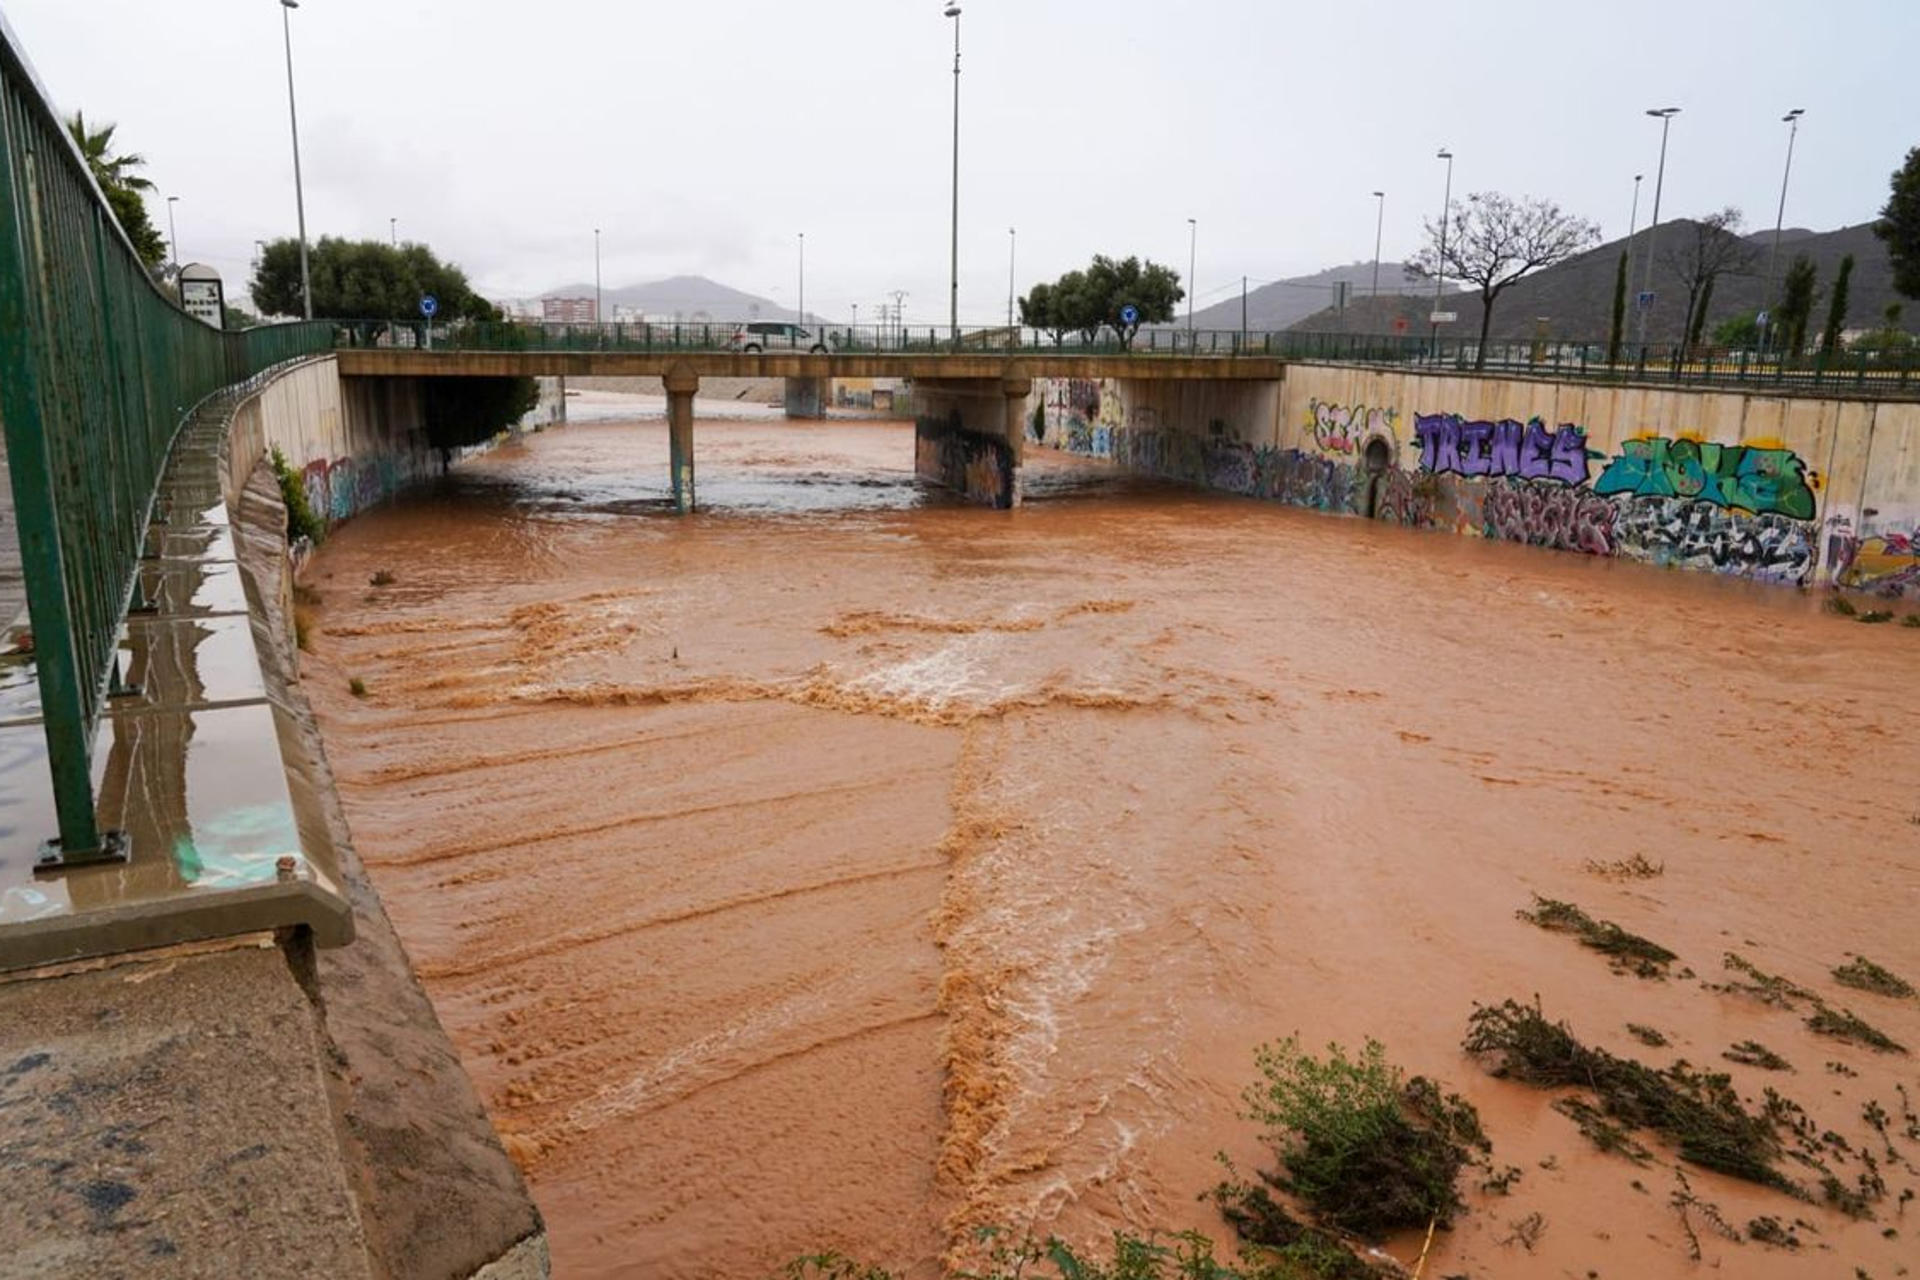 Precipitaciones de más de 100 litros provocan una decena de intervenciones, inundaciones y cortes de carretera en Cartagena. EFE/ Ayuntamiento Cartagena SOLO USO EDITORIAL/SOLO DISPONIBLE PARA ILUSTRAR LA NOTICIA QUE ACOMPAÑA (CRÉDITO OBLIGATORIO)